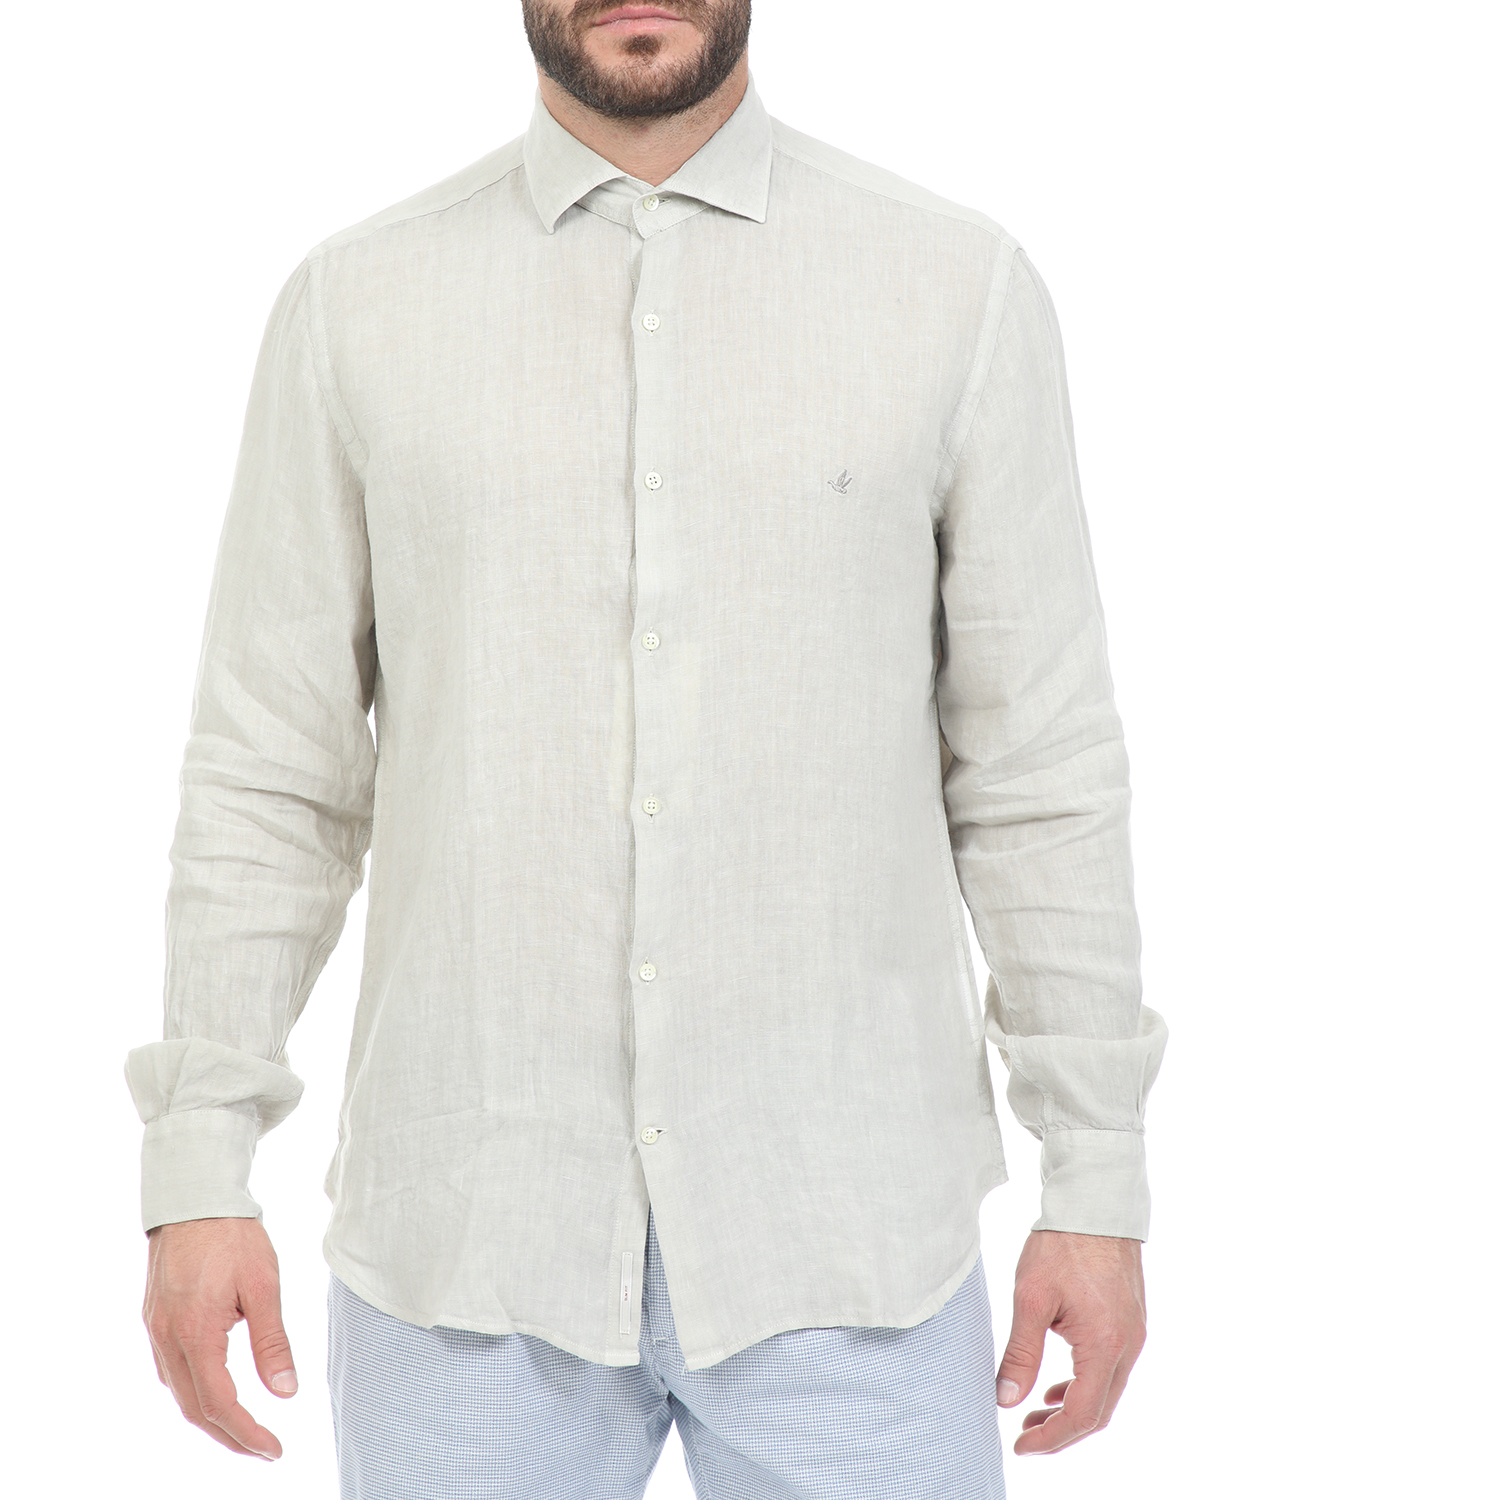 Ανδρικά/Ρούχα/Πουκάμισα/Μακρυμάνικα BROOKSFIELD - Ανδρικό λινό πουκάμισο BROOKSFIELD μπεζ